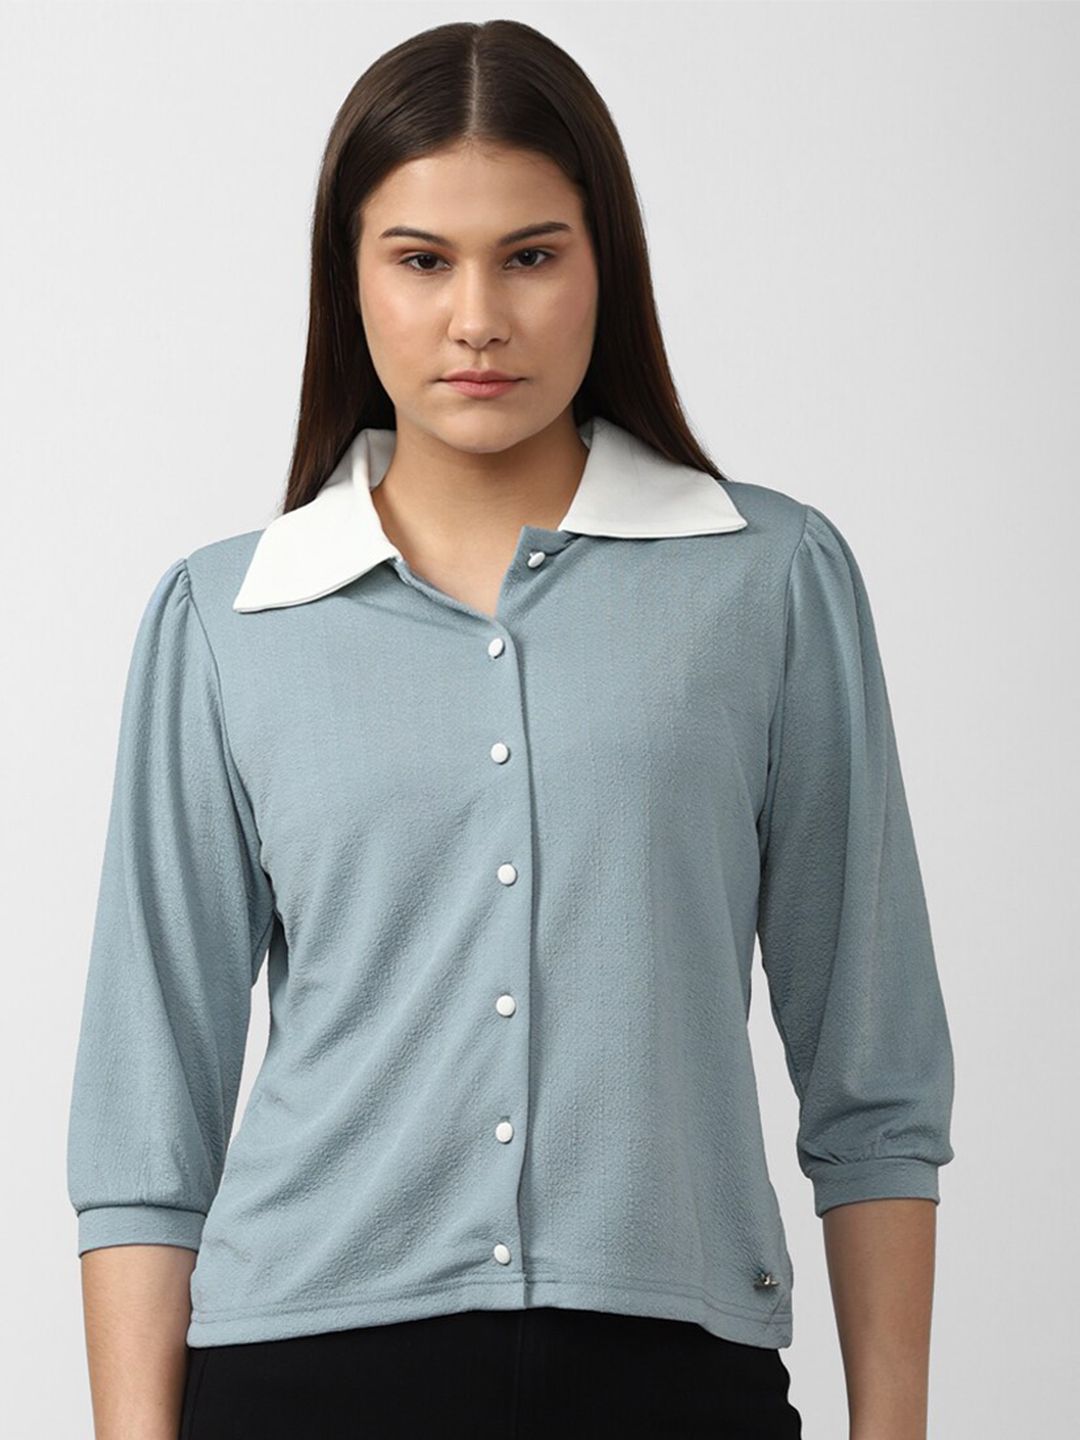 Van Heusen Woman Shirt Style Top Price in India